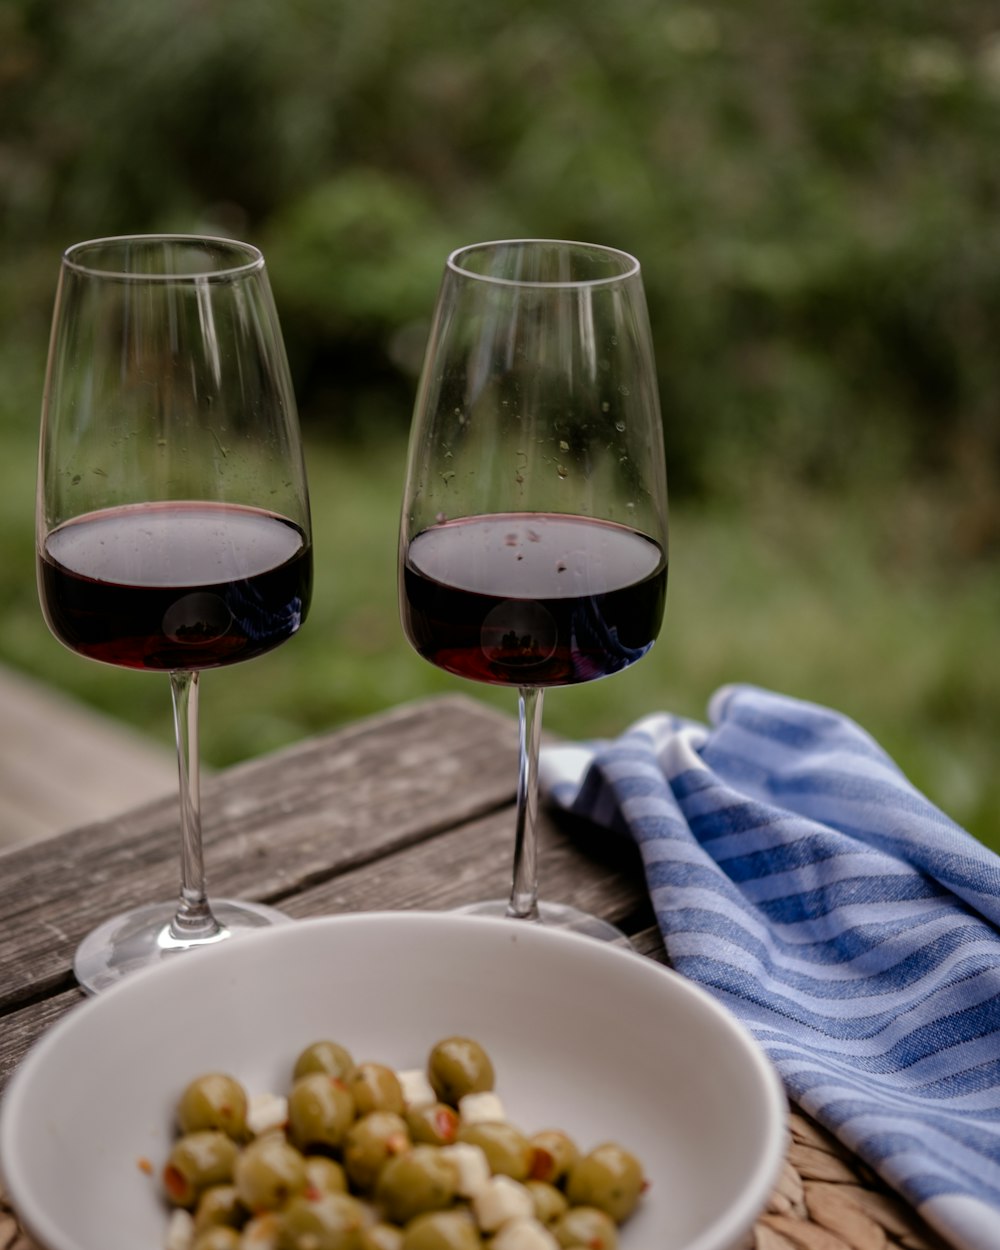 Deux verres de vin rouge et une assiette d’olives vertes